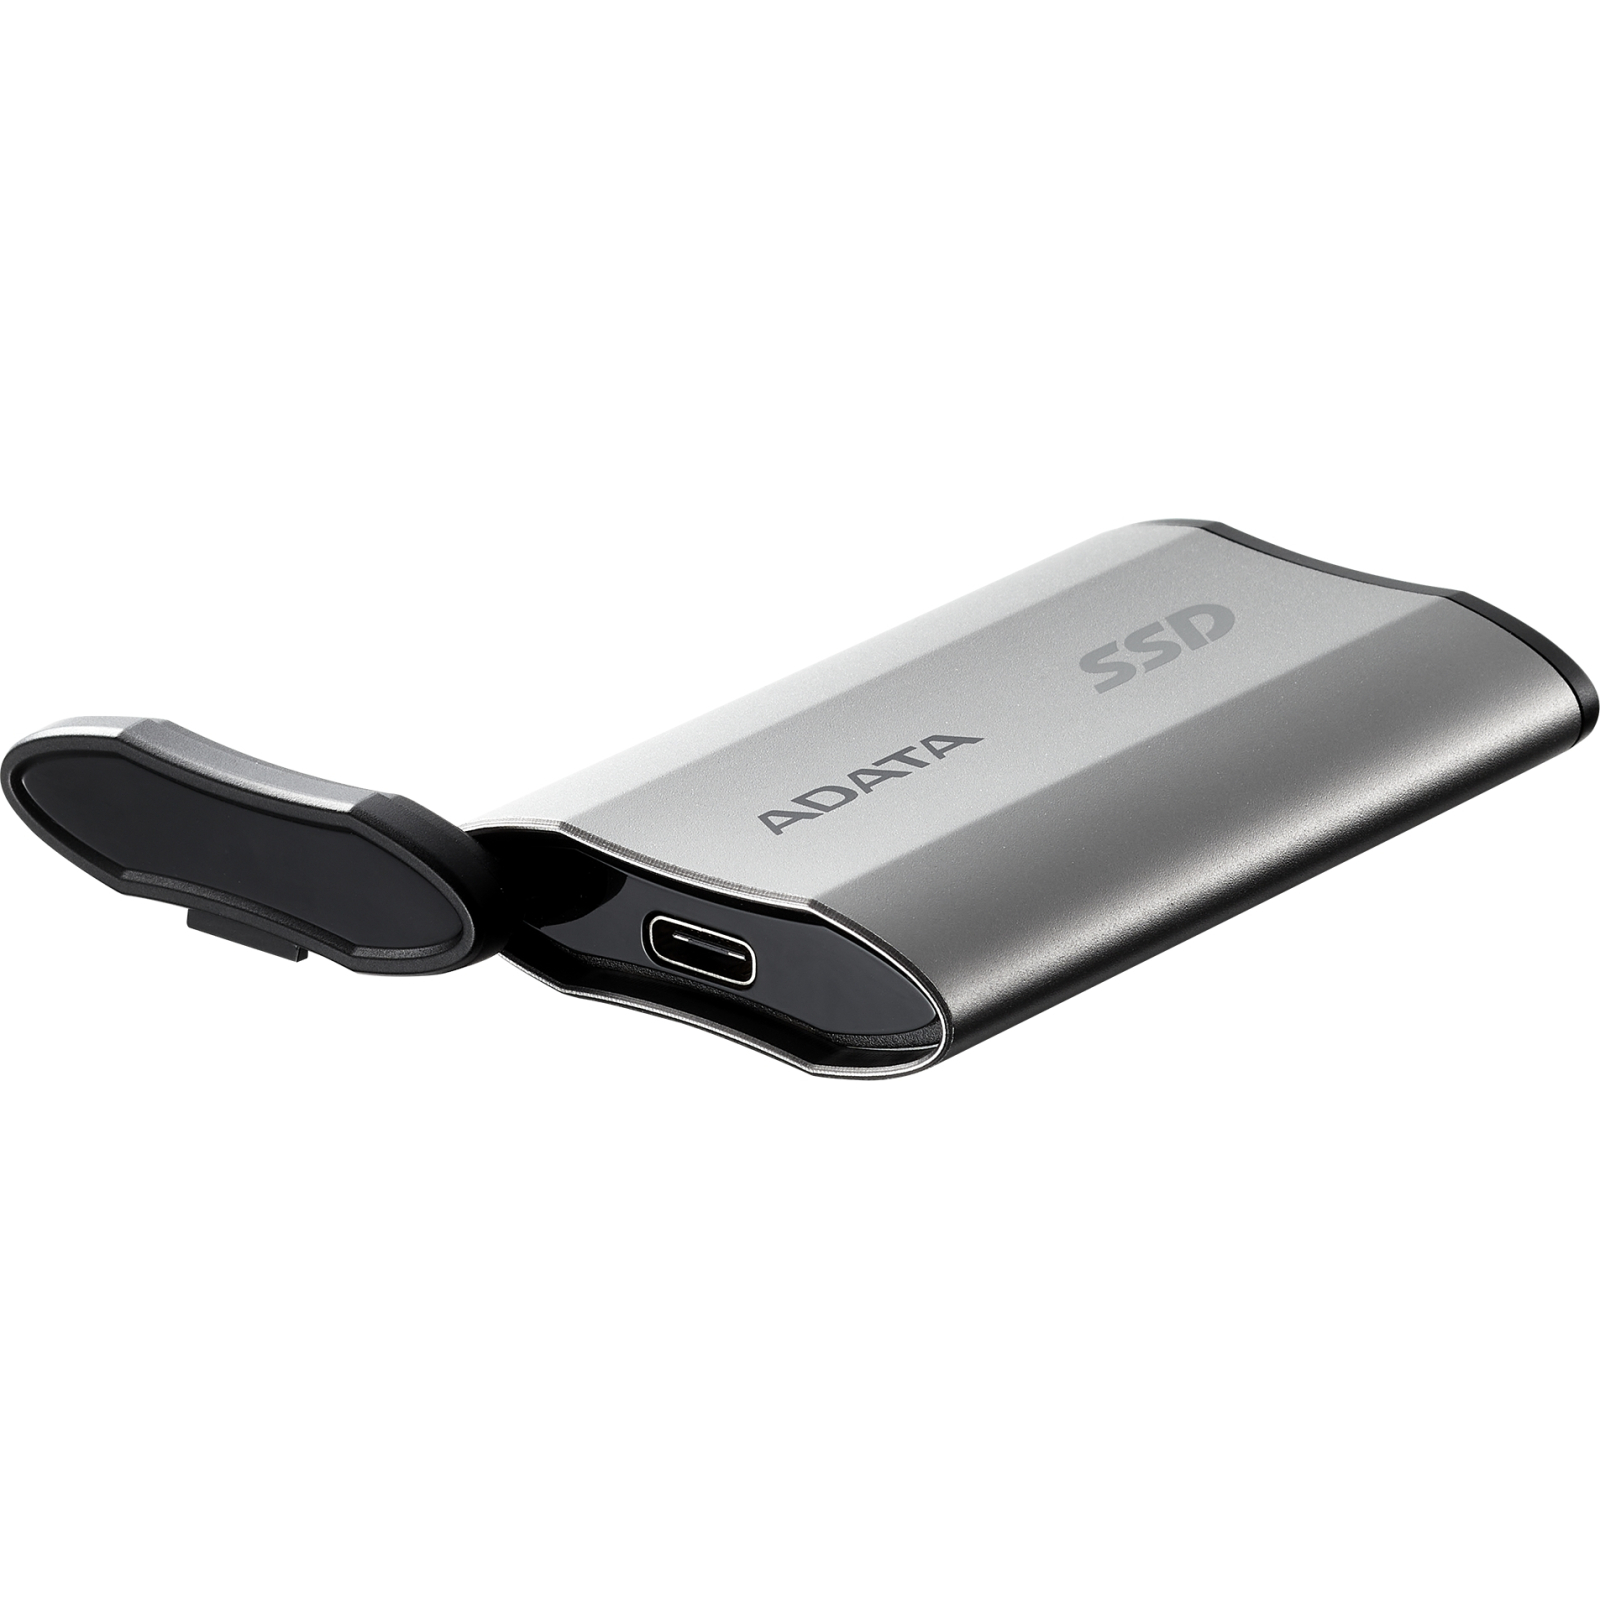 Накопичувач SSD USB 3.2 1TB ADATA (SD810-1000G-CBK) зображення 5